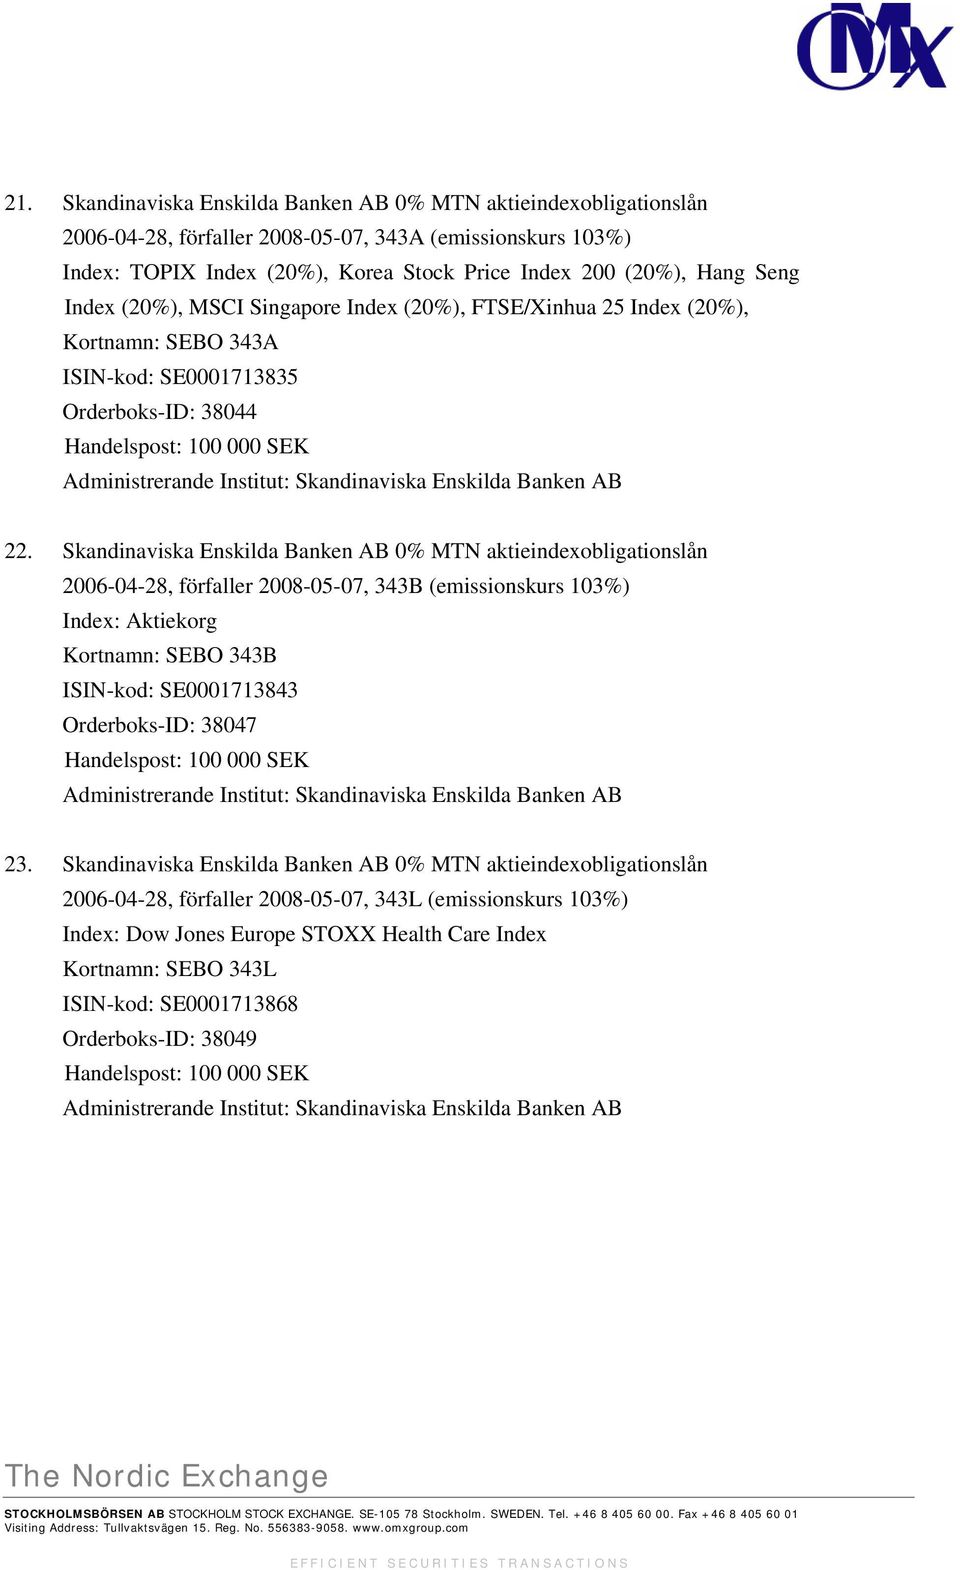 Skandinaviska Enskilda Banken AB 0% MTN aktieindexobligationslån 2006-04-28, förfaller 2008-05-07, 343B (emissionskurs 103%) Index: Aktiekorg Kortnamn: SEBO 343B ISIN-kod: SE0001713843 Orderboks-ID: